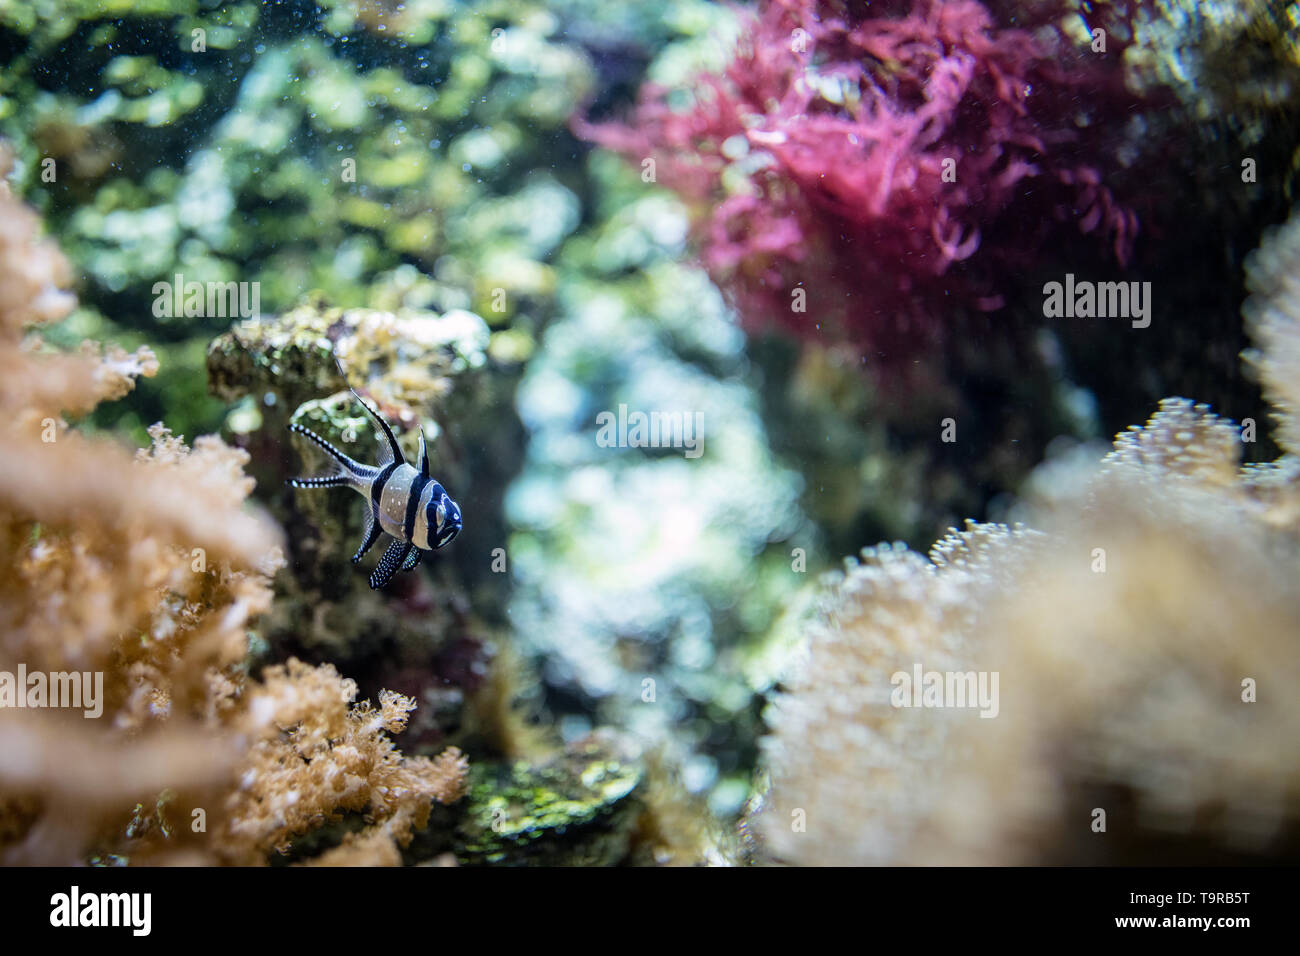 exotic cardinal fish underwater Stock Photo